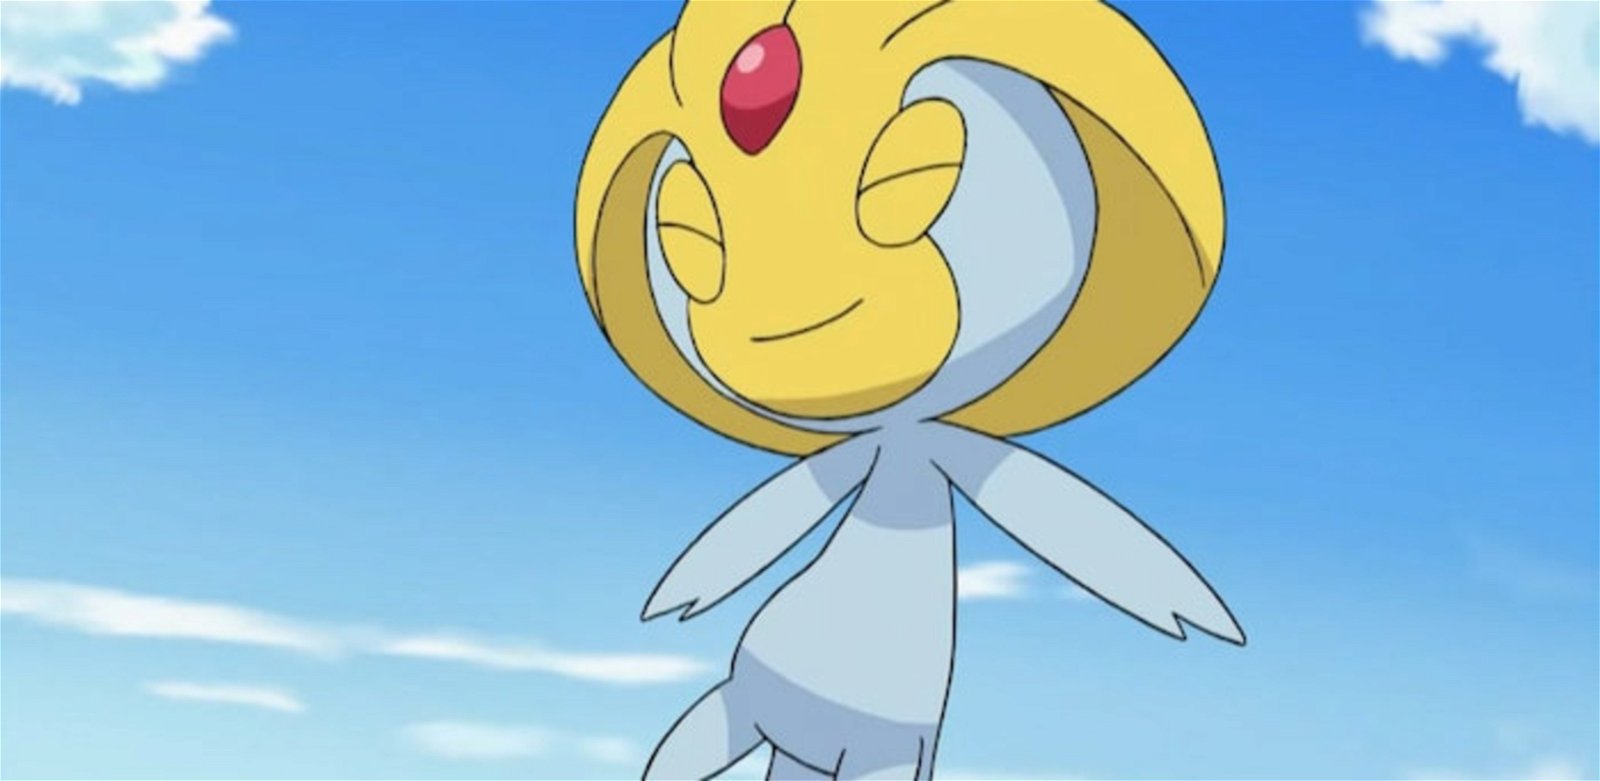 Uxie es el Pokémon que representa la Sabiduría en esta franquicia